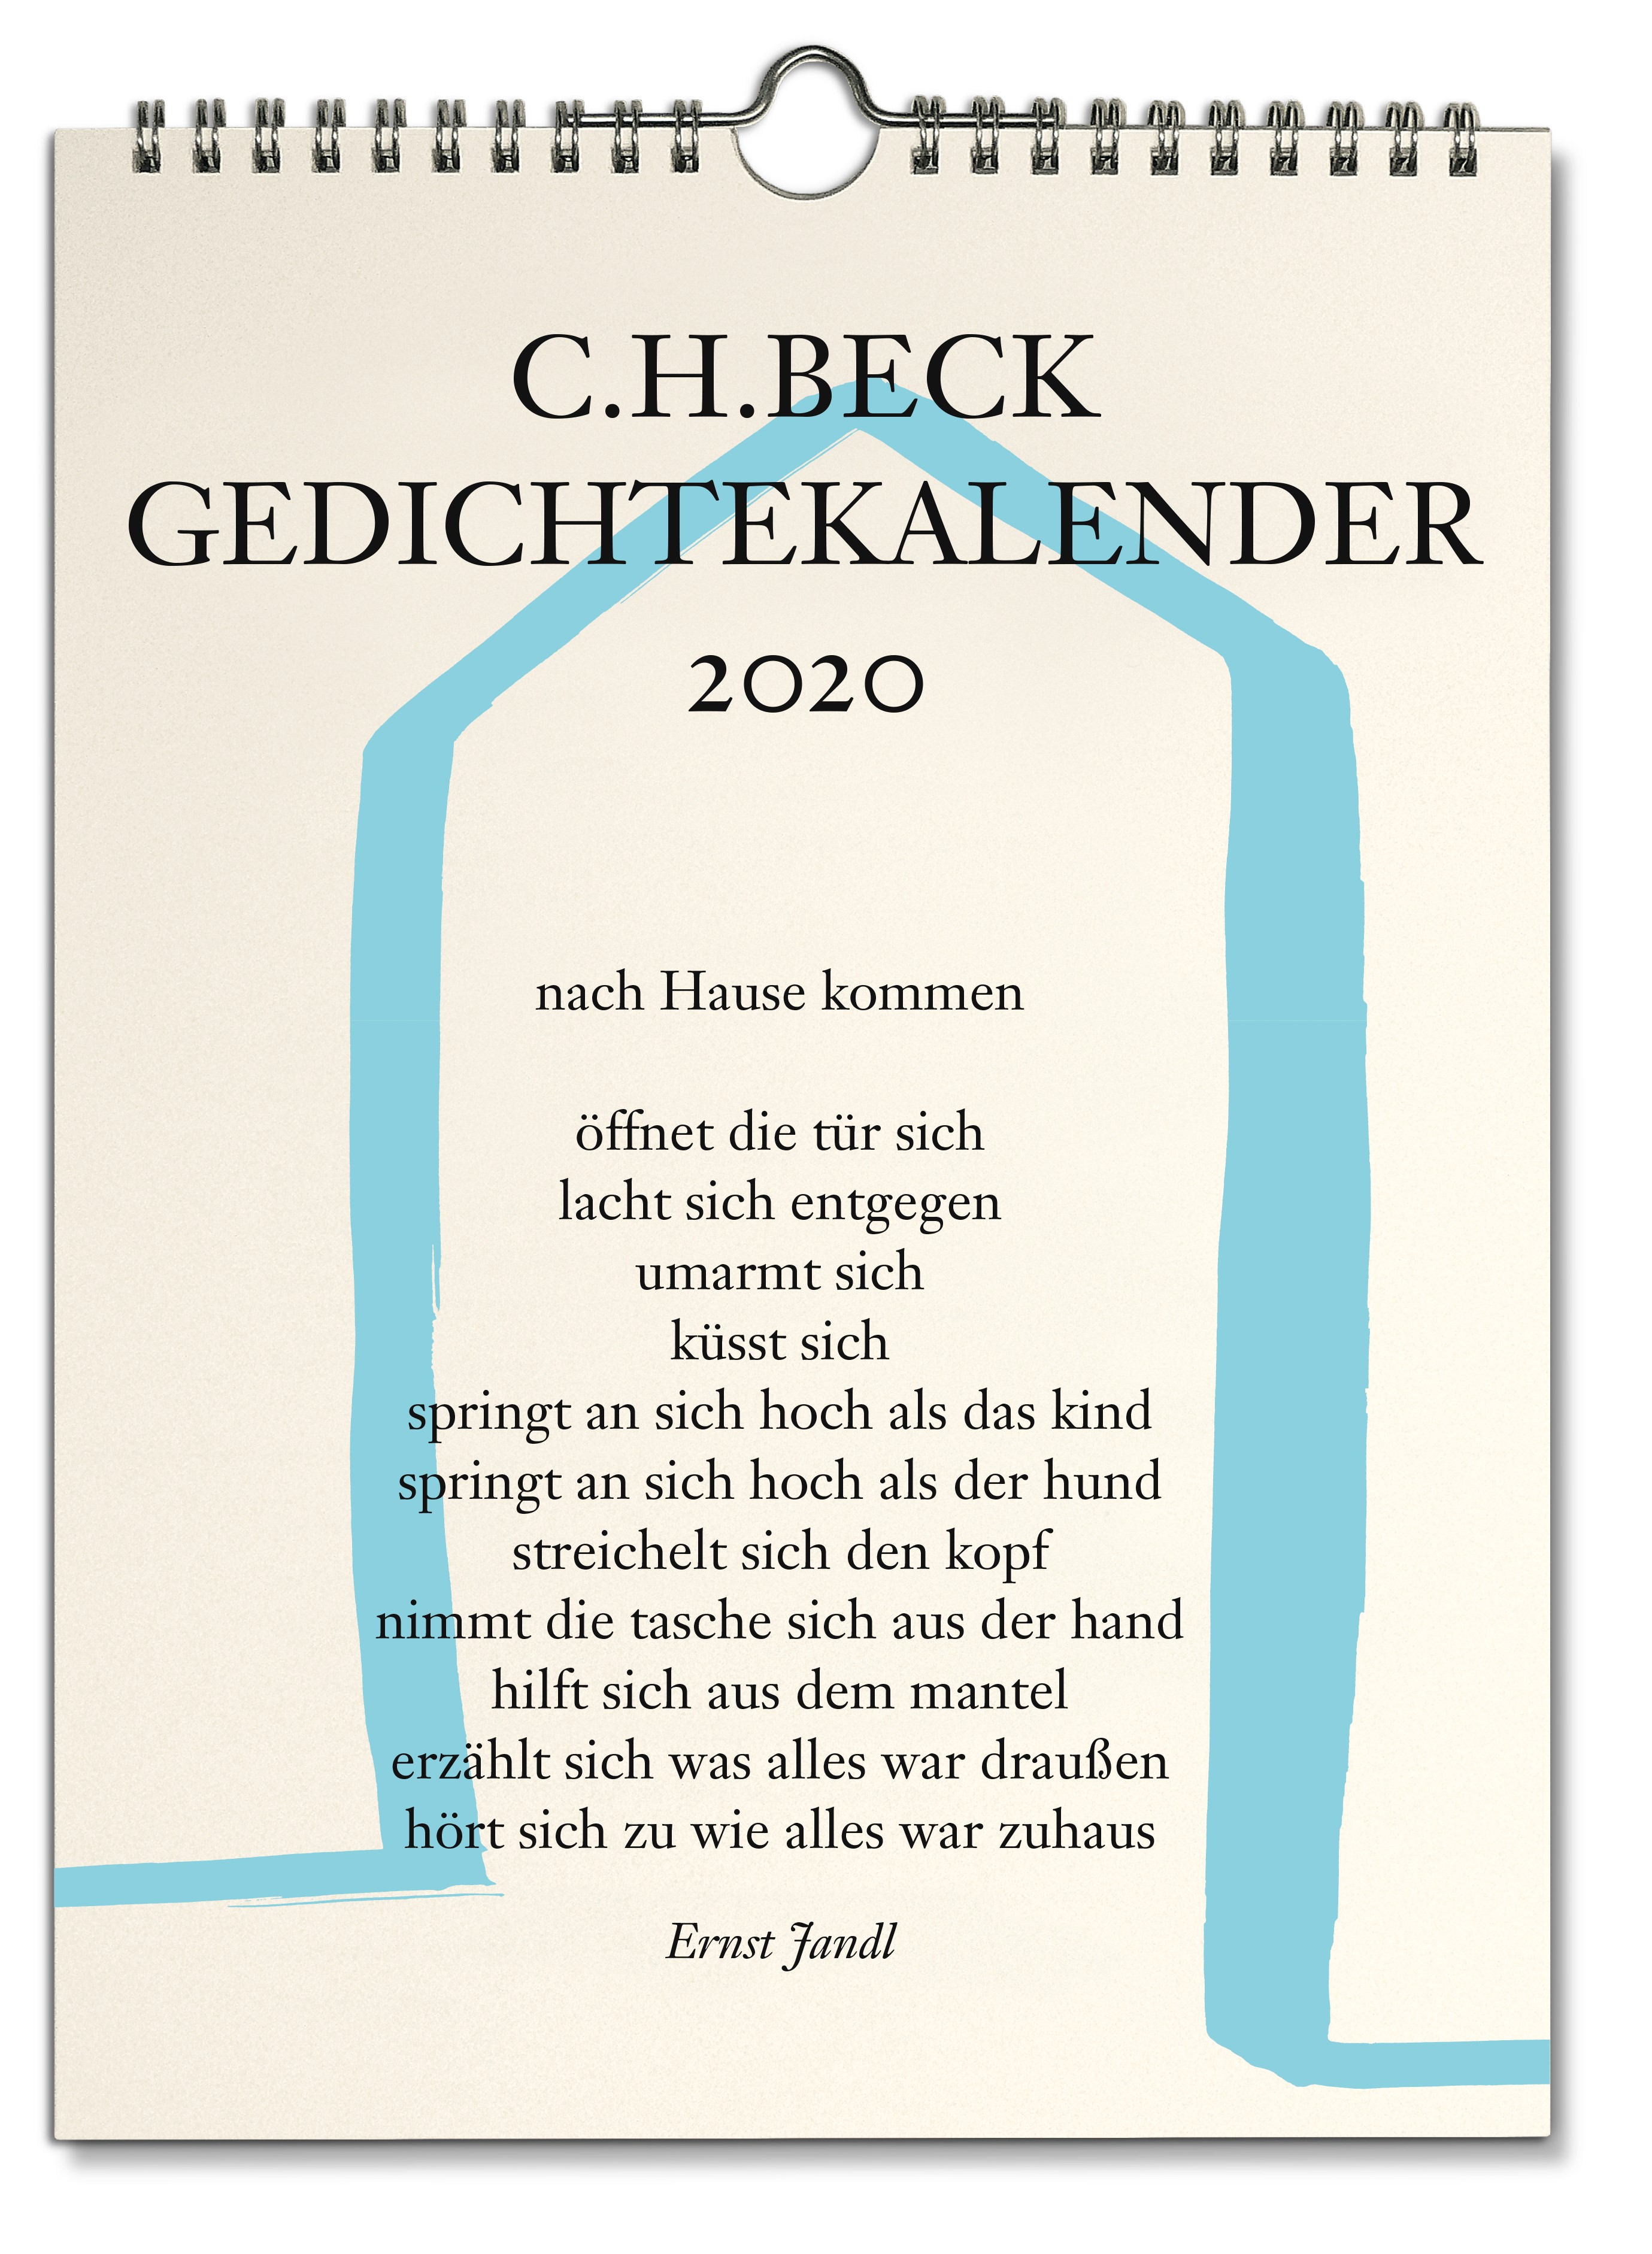 Cover: Petersdorff, Dirk von, C.H. Beck Gedichtekalender